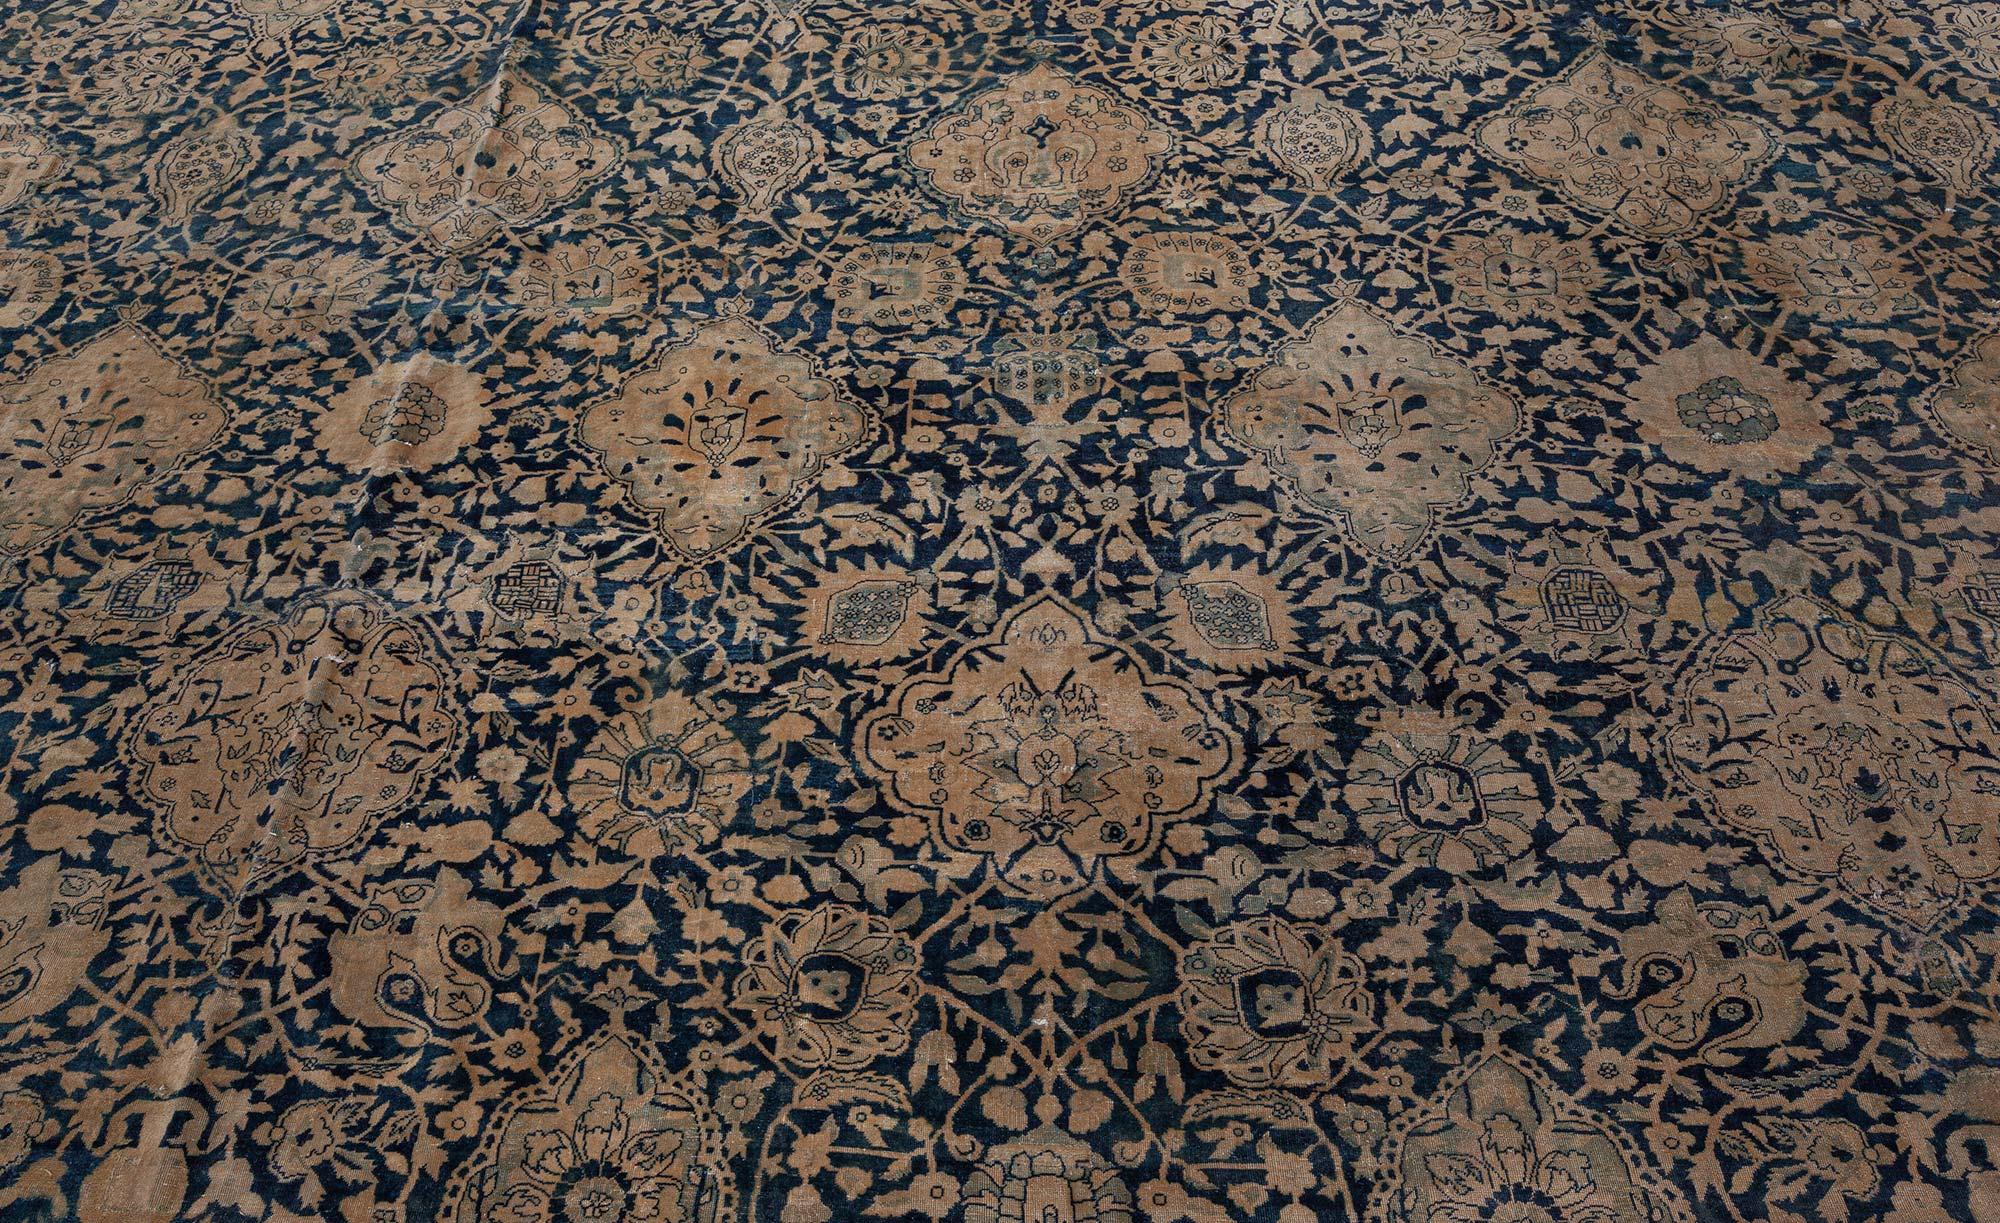 Oversized antique Indian botanic handmade wool rug
Size: 16'5